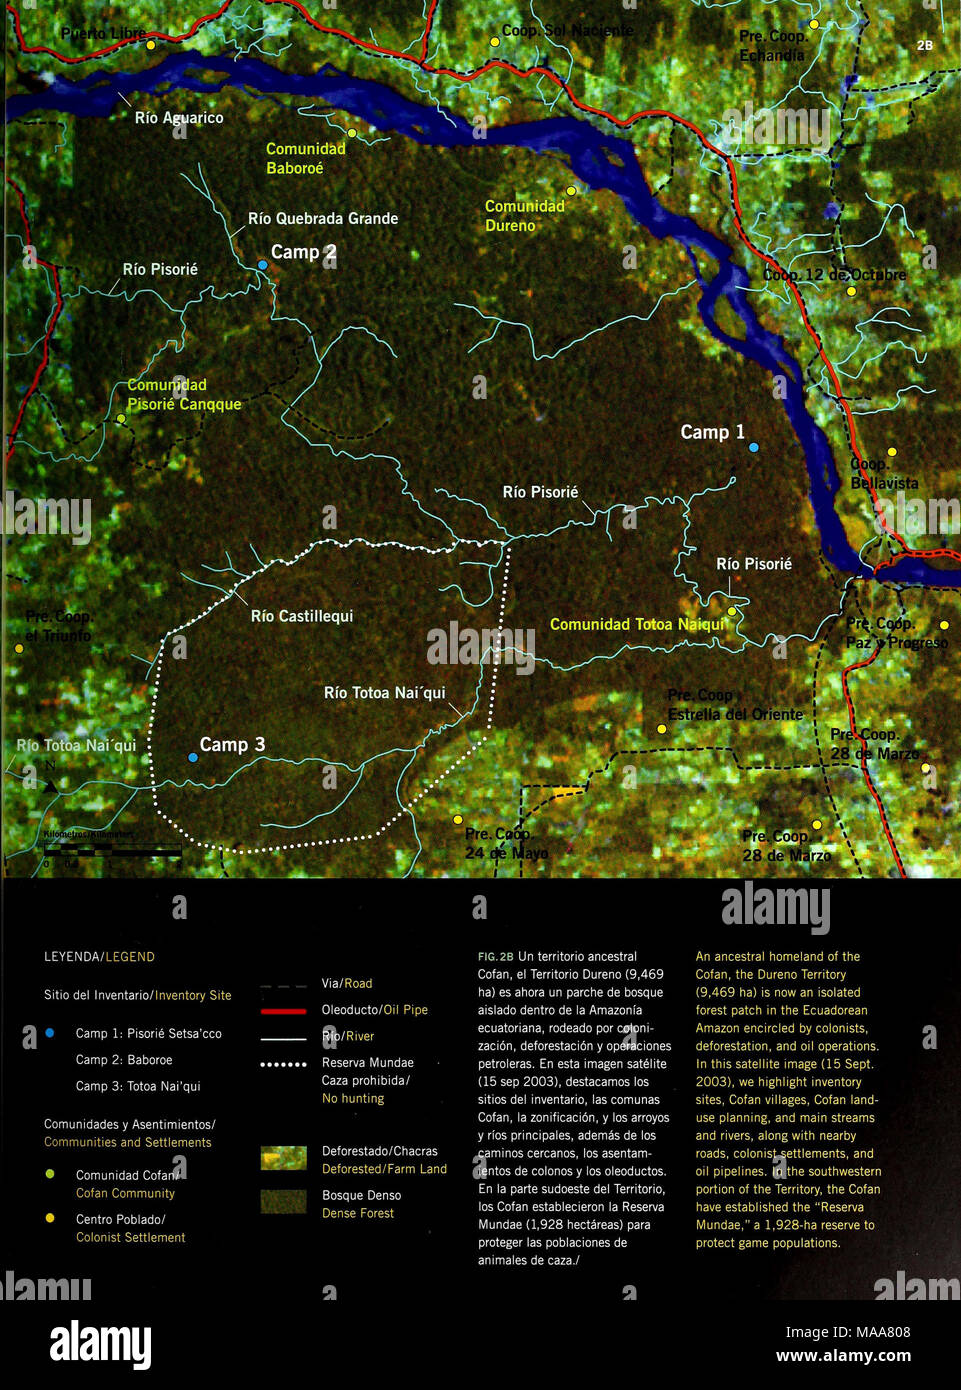 . Ecuador : Territorio Cofan Dureno . Via/Road Oleoducto/Oil Pipe Rio/River Reserva Mundae Caza prohibida/ No hunting Deforestado/Chacras Deforested/Farm Land Bosque Denso Dense Forest FIG.2B Un territorio ancestral Cofan, el Territorio Dureno (9,469 ha) es ahora un parche de bosque aislado dentro de la Amazonia ecuatoriana, rodeado por coloni- zación, deforestación y operaciones petroleras. En esta imagen satélite (15 sep 2003), destacamos los sitios del inventario, las comunas Cofan, la zonificación, y los arroyos y ríos principales, además de los caminos cercanos, los asentam- ientos de col Stock Photo